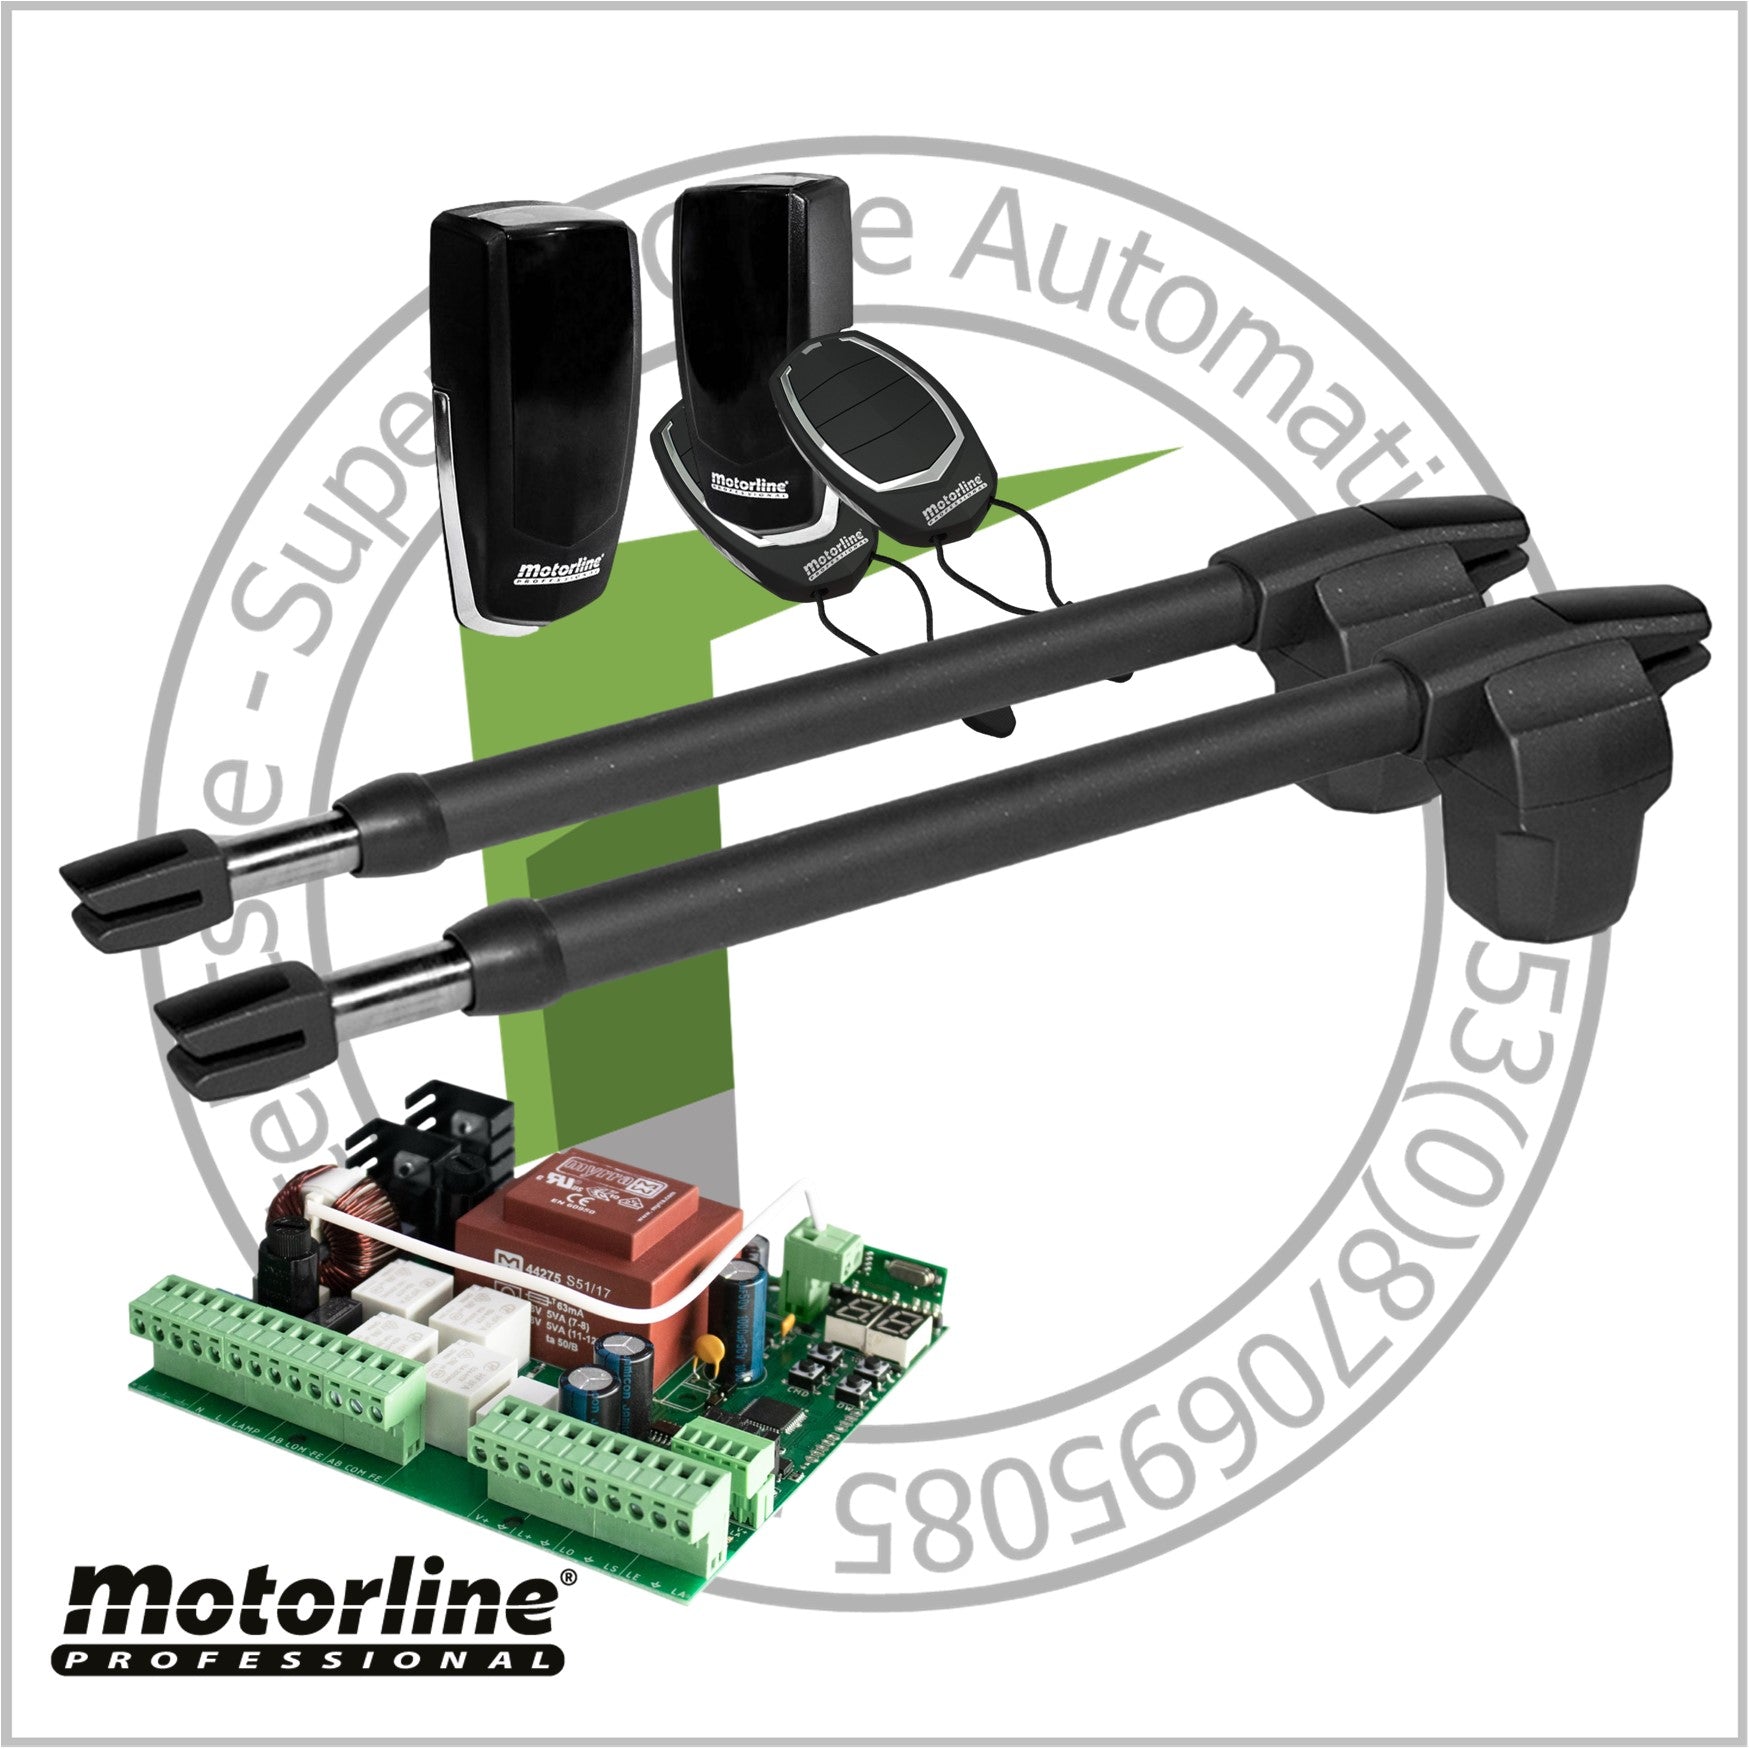 Motorline LINCE Double Leaf Gate Kit - For Entrances up to 8m (24ft)